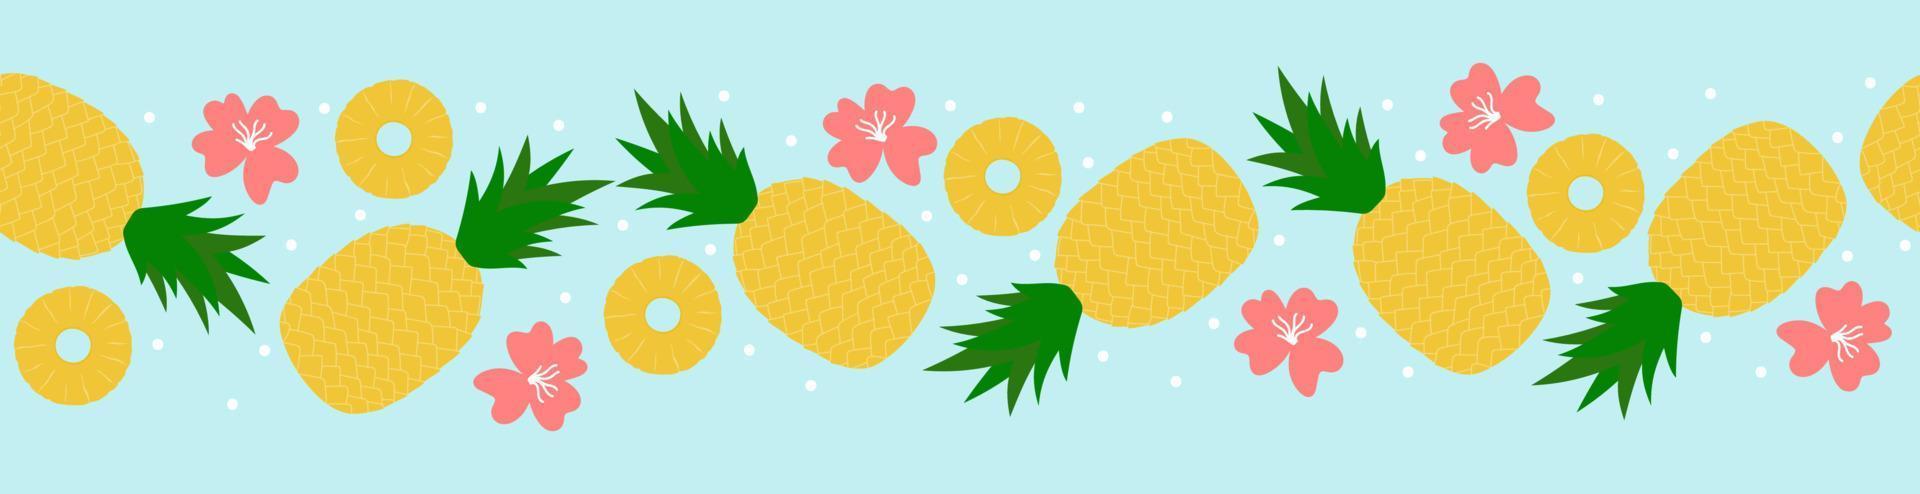 bordo senza giunte di ananas. cartone animato intera frutta, fette e fiori su sfondo blu vettore